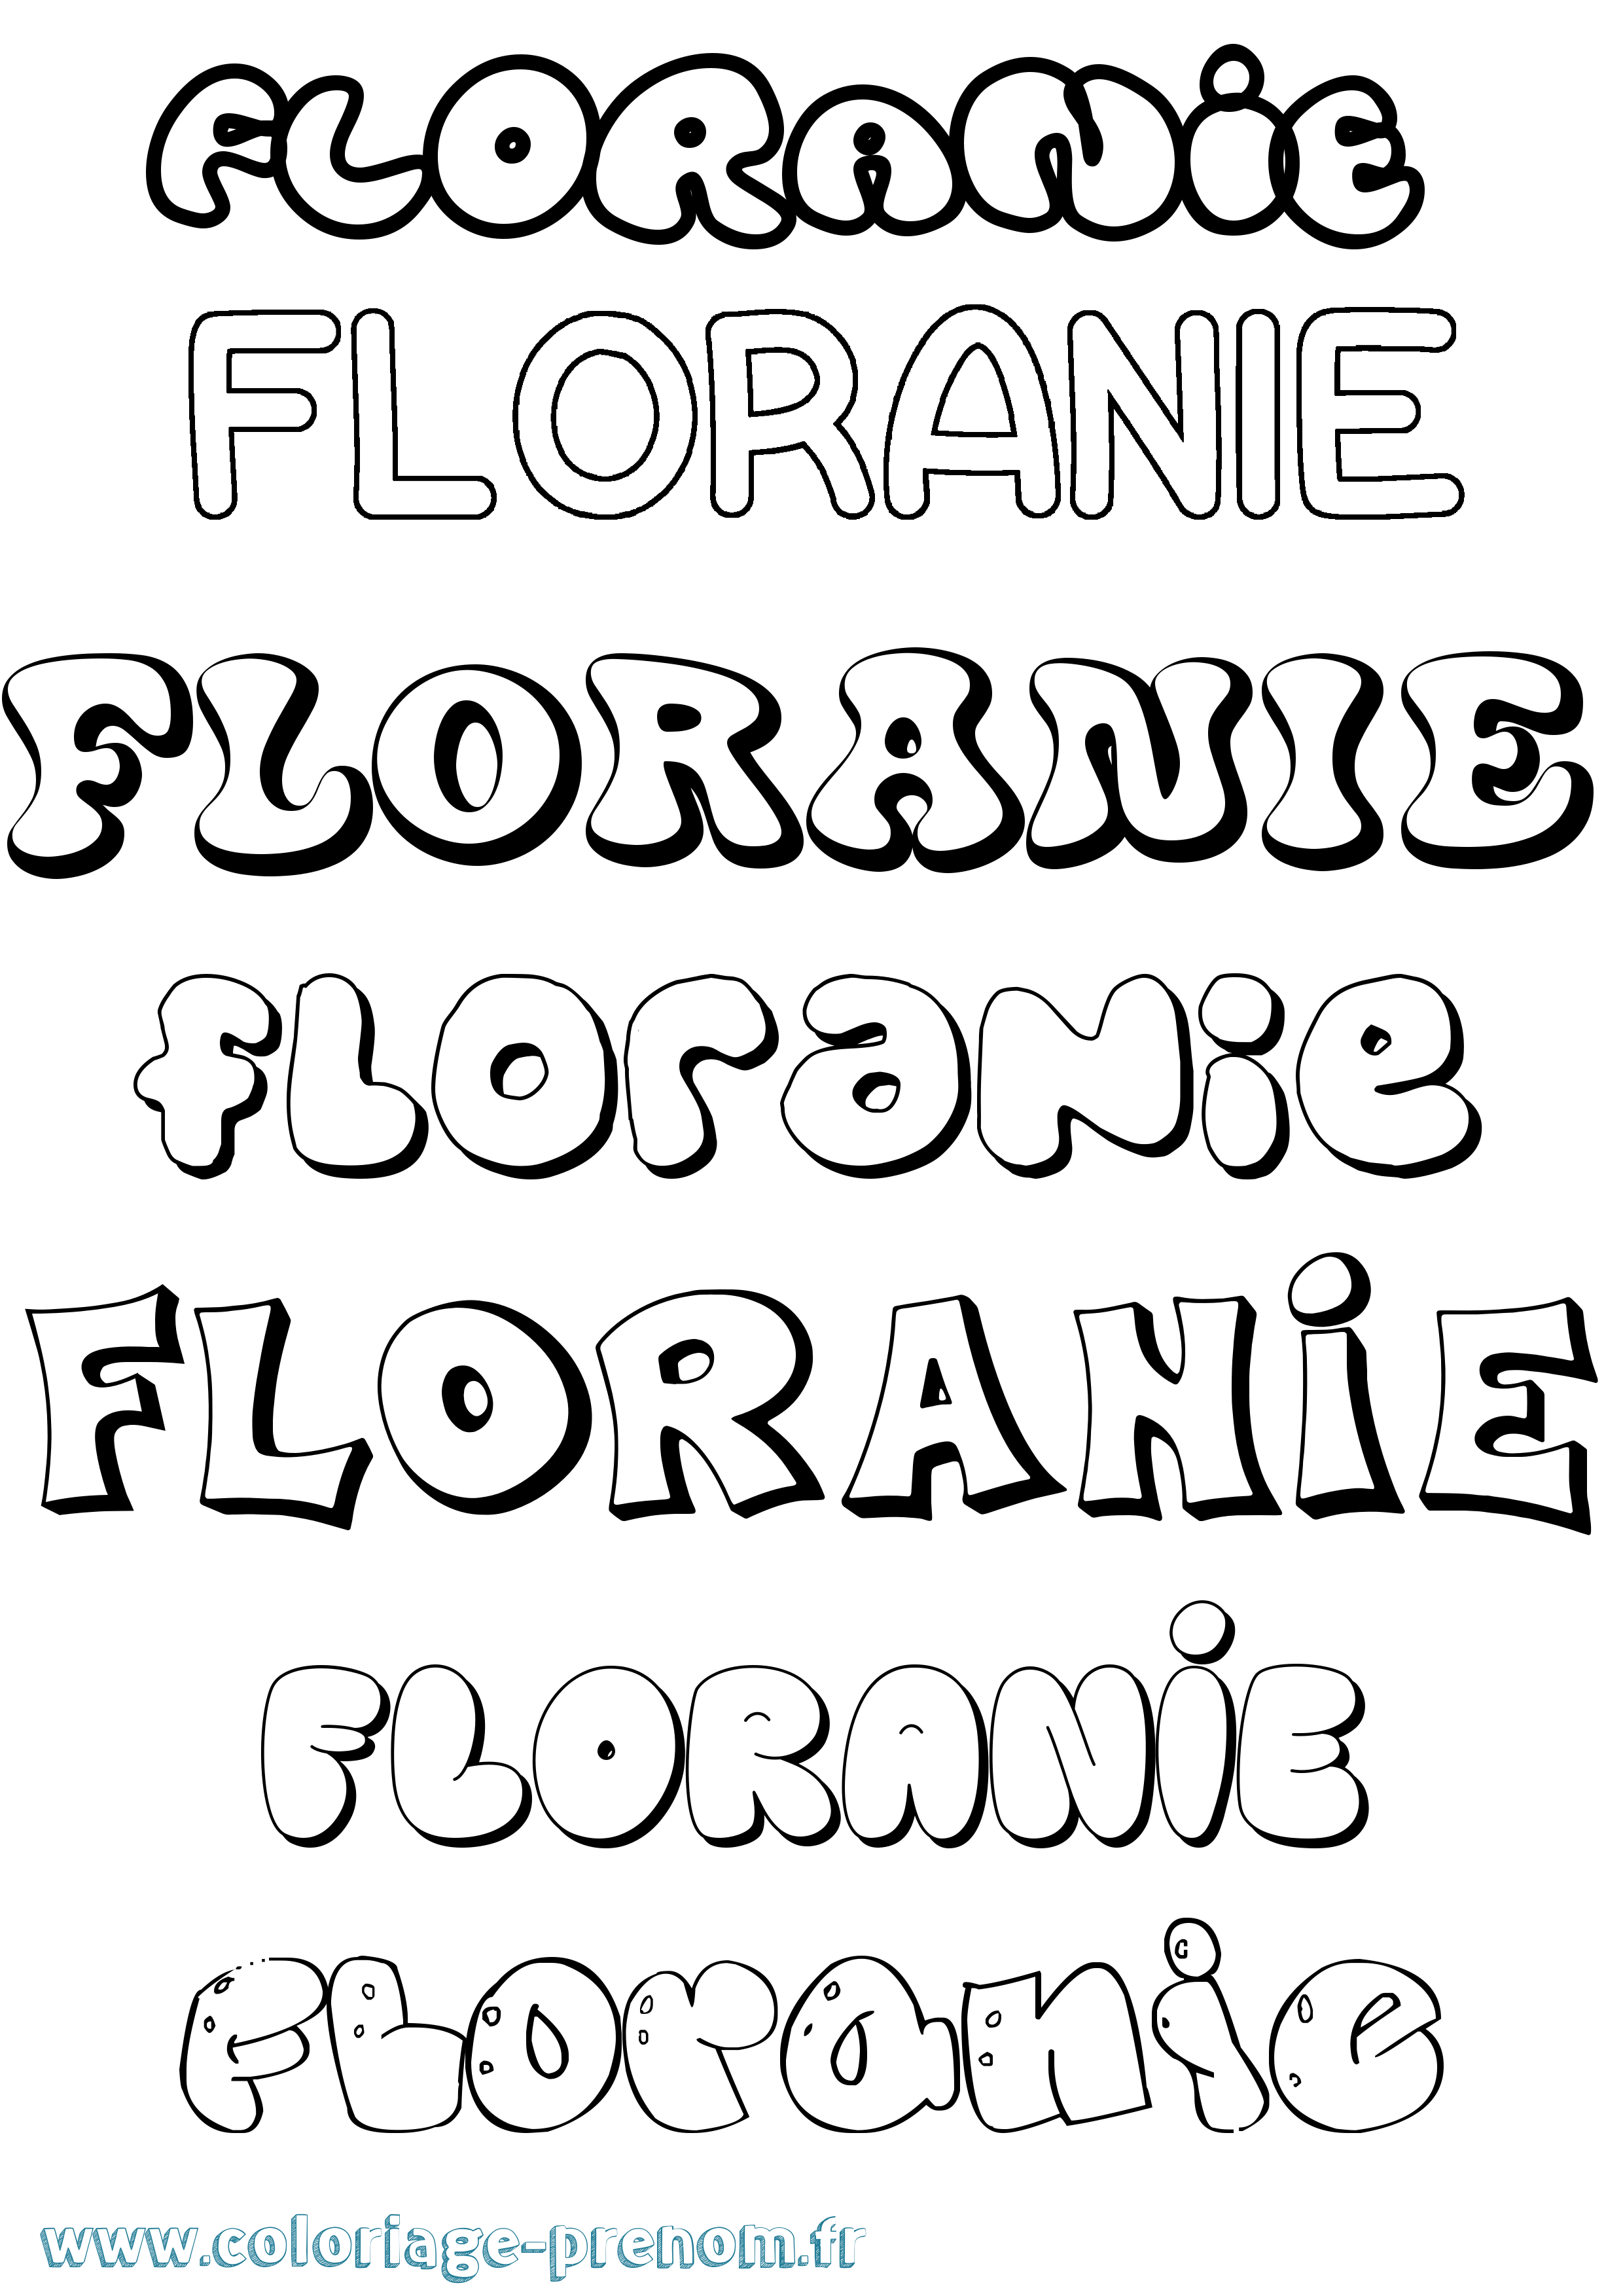 Coloriage prénom Floranie Bubble